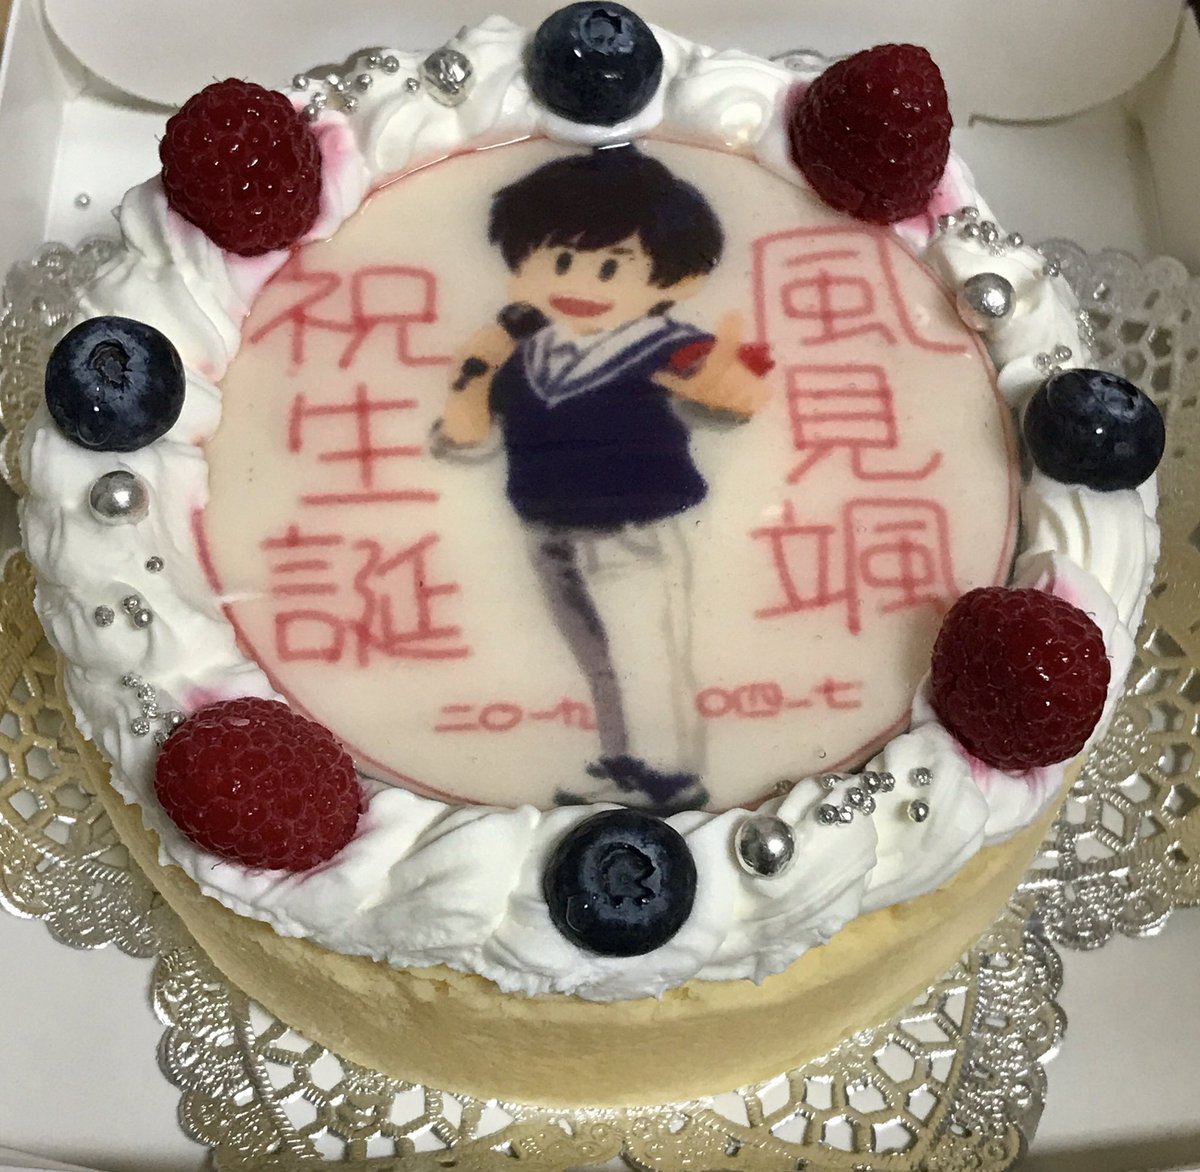 今更風見颯くんのケーキを受け取りました…カケルくん、ごめんなさい…!
お誕生日おめでとうございました!
#風見颯生誕祭2019 